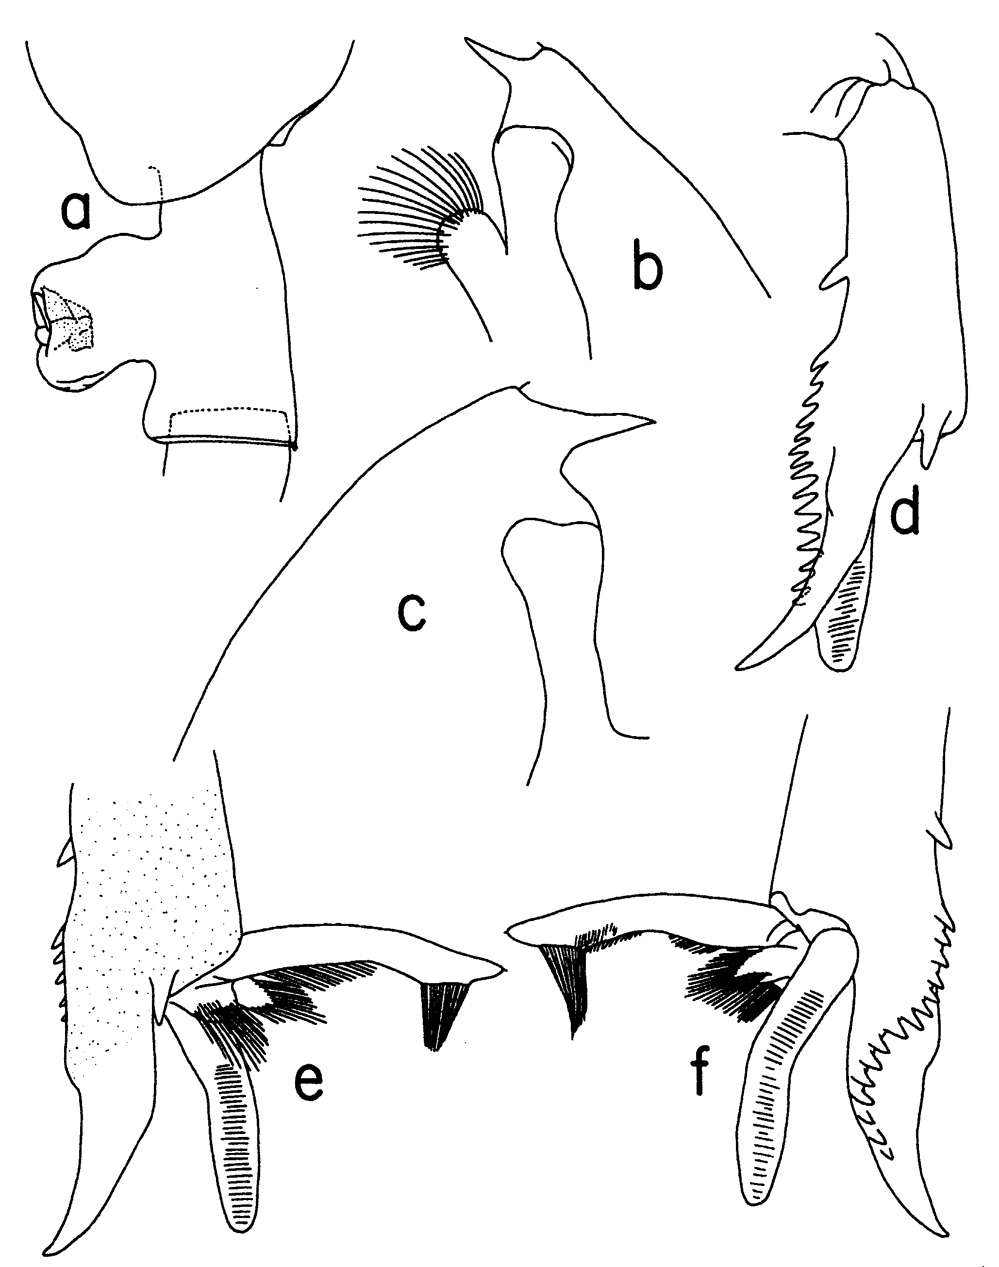 Espèce Paraeuchaeta gracilis - Planche 11 de figures morphologiques